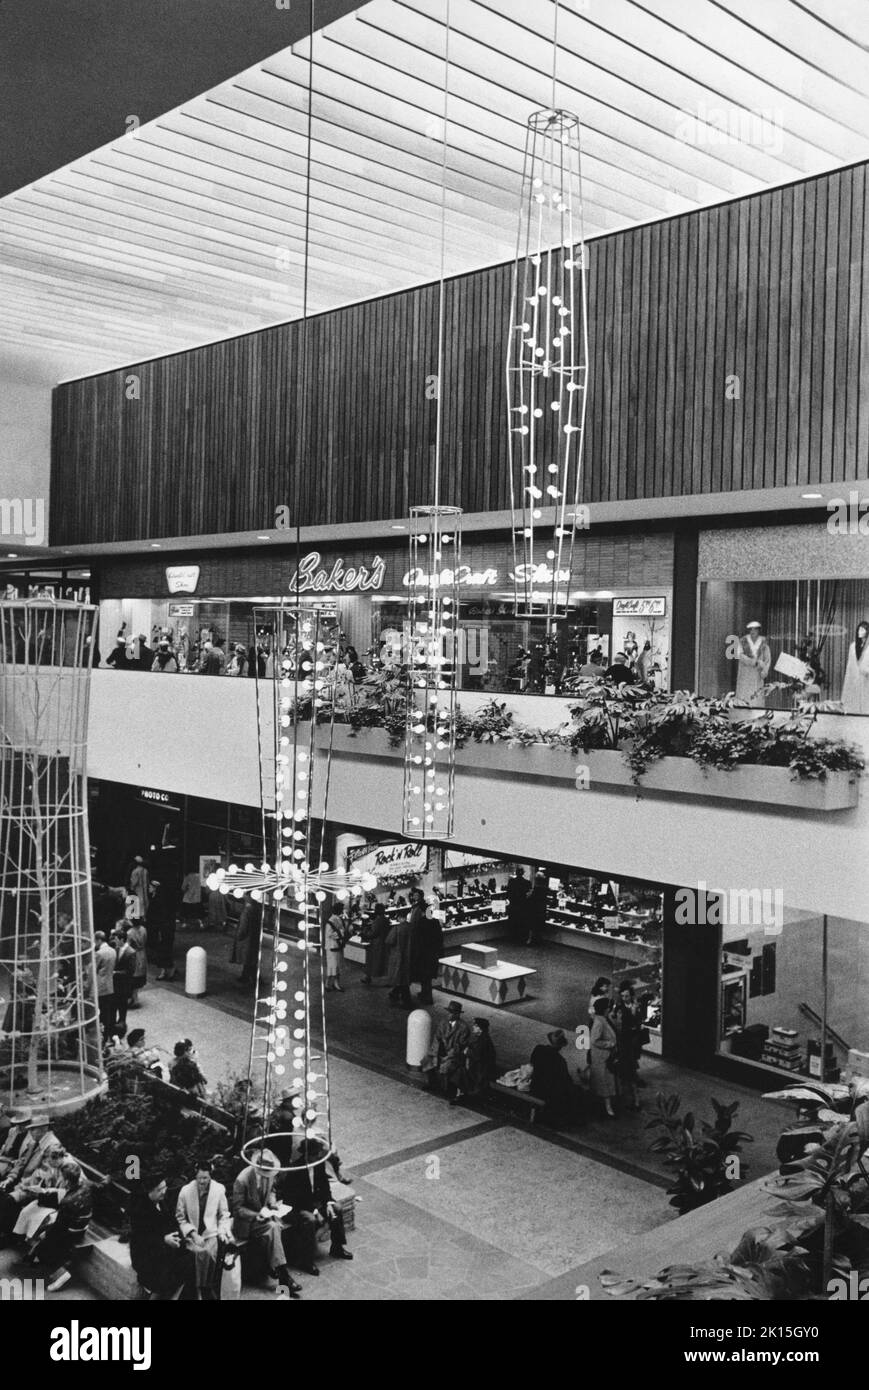 Southdale Einkaufszentrum in der Nähe von Minneapolis, MN. Dies war eines der ersten Einkaufszentren Amerikas und wurde von Victor Gruen entworfen. Stockfoto